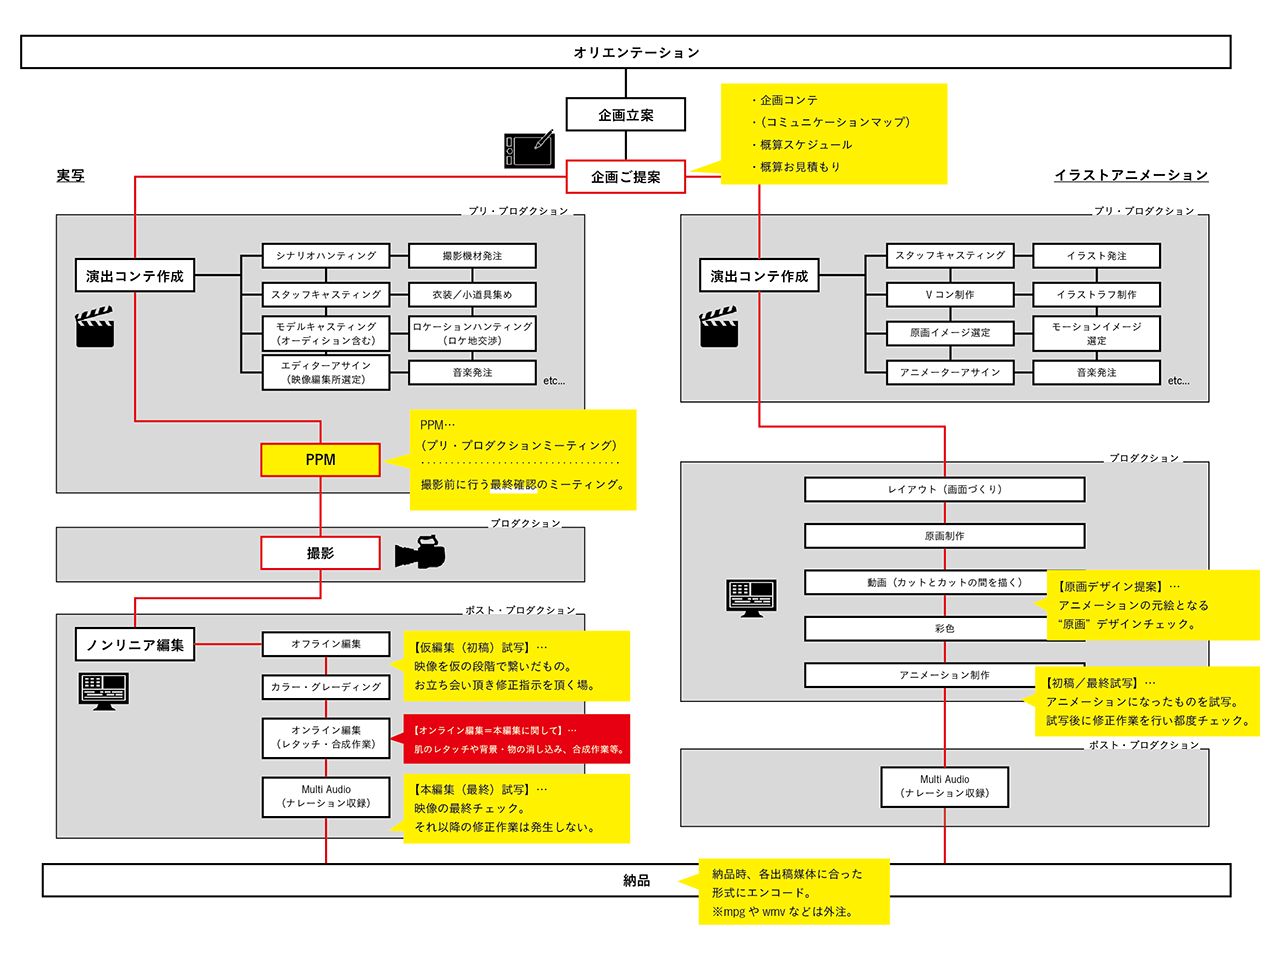 FOCUS辻本　プロ・プロダクションワークのマップ